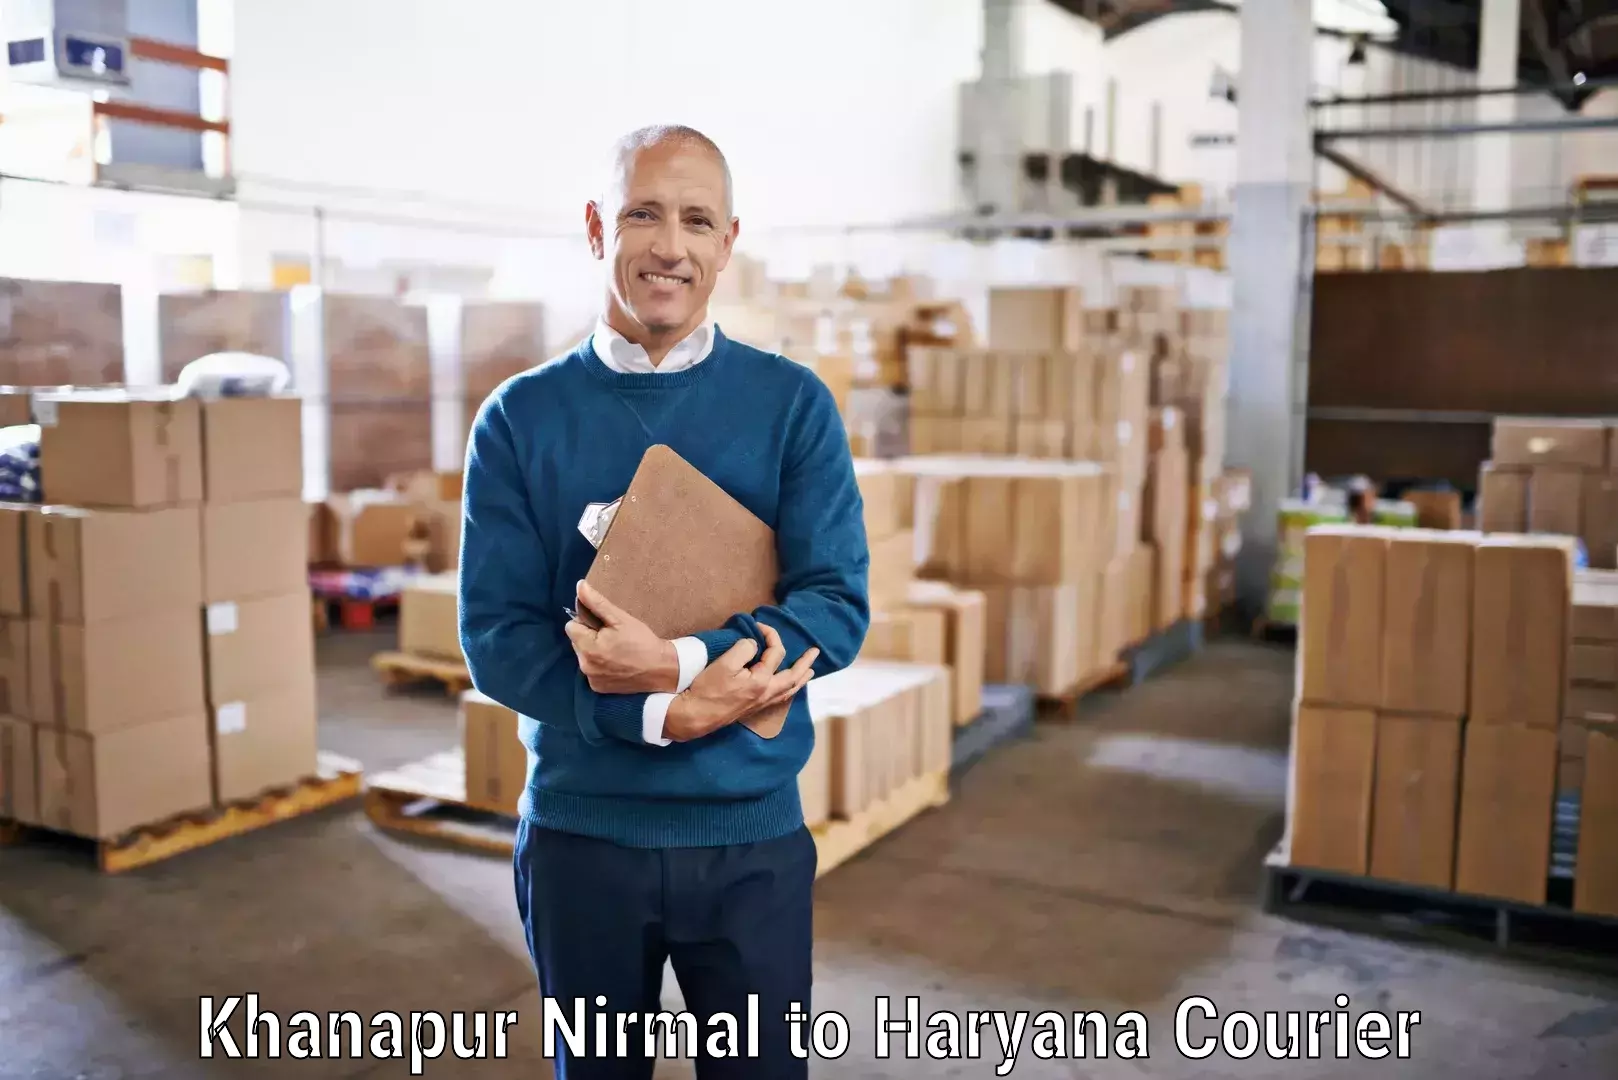 24/7 courier service Khanapur Nirmal to NIT Kurukshetra